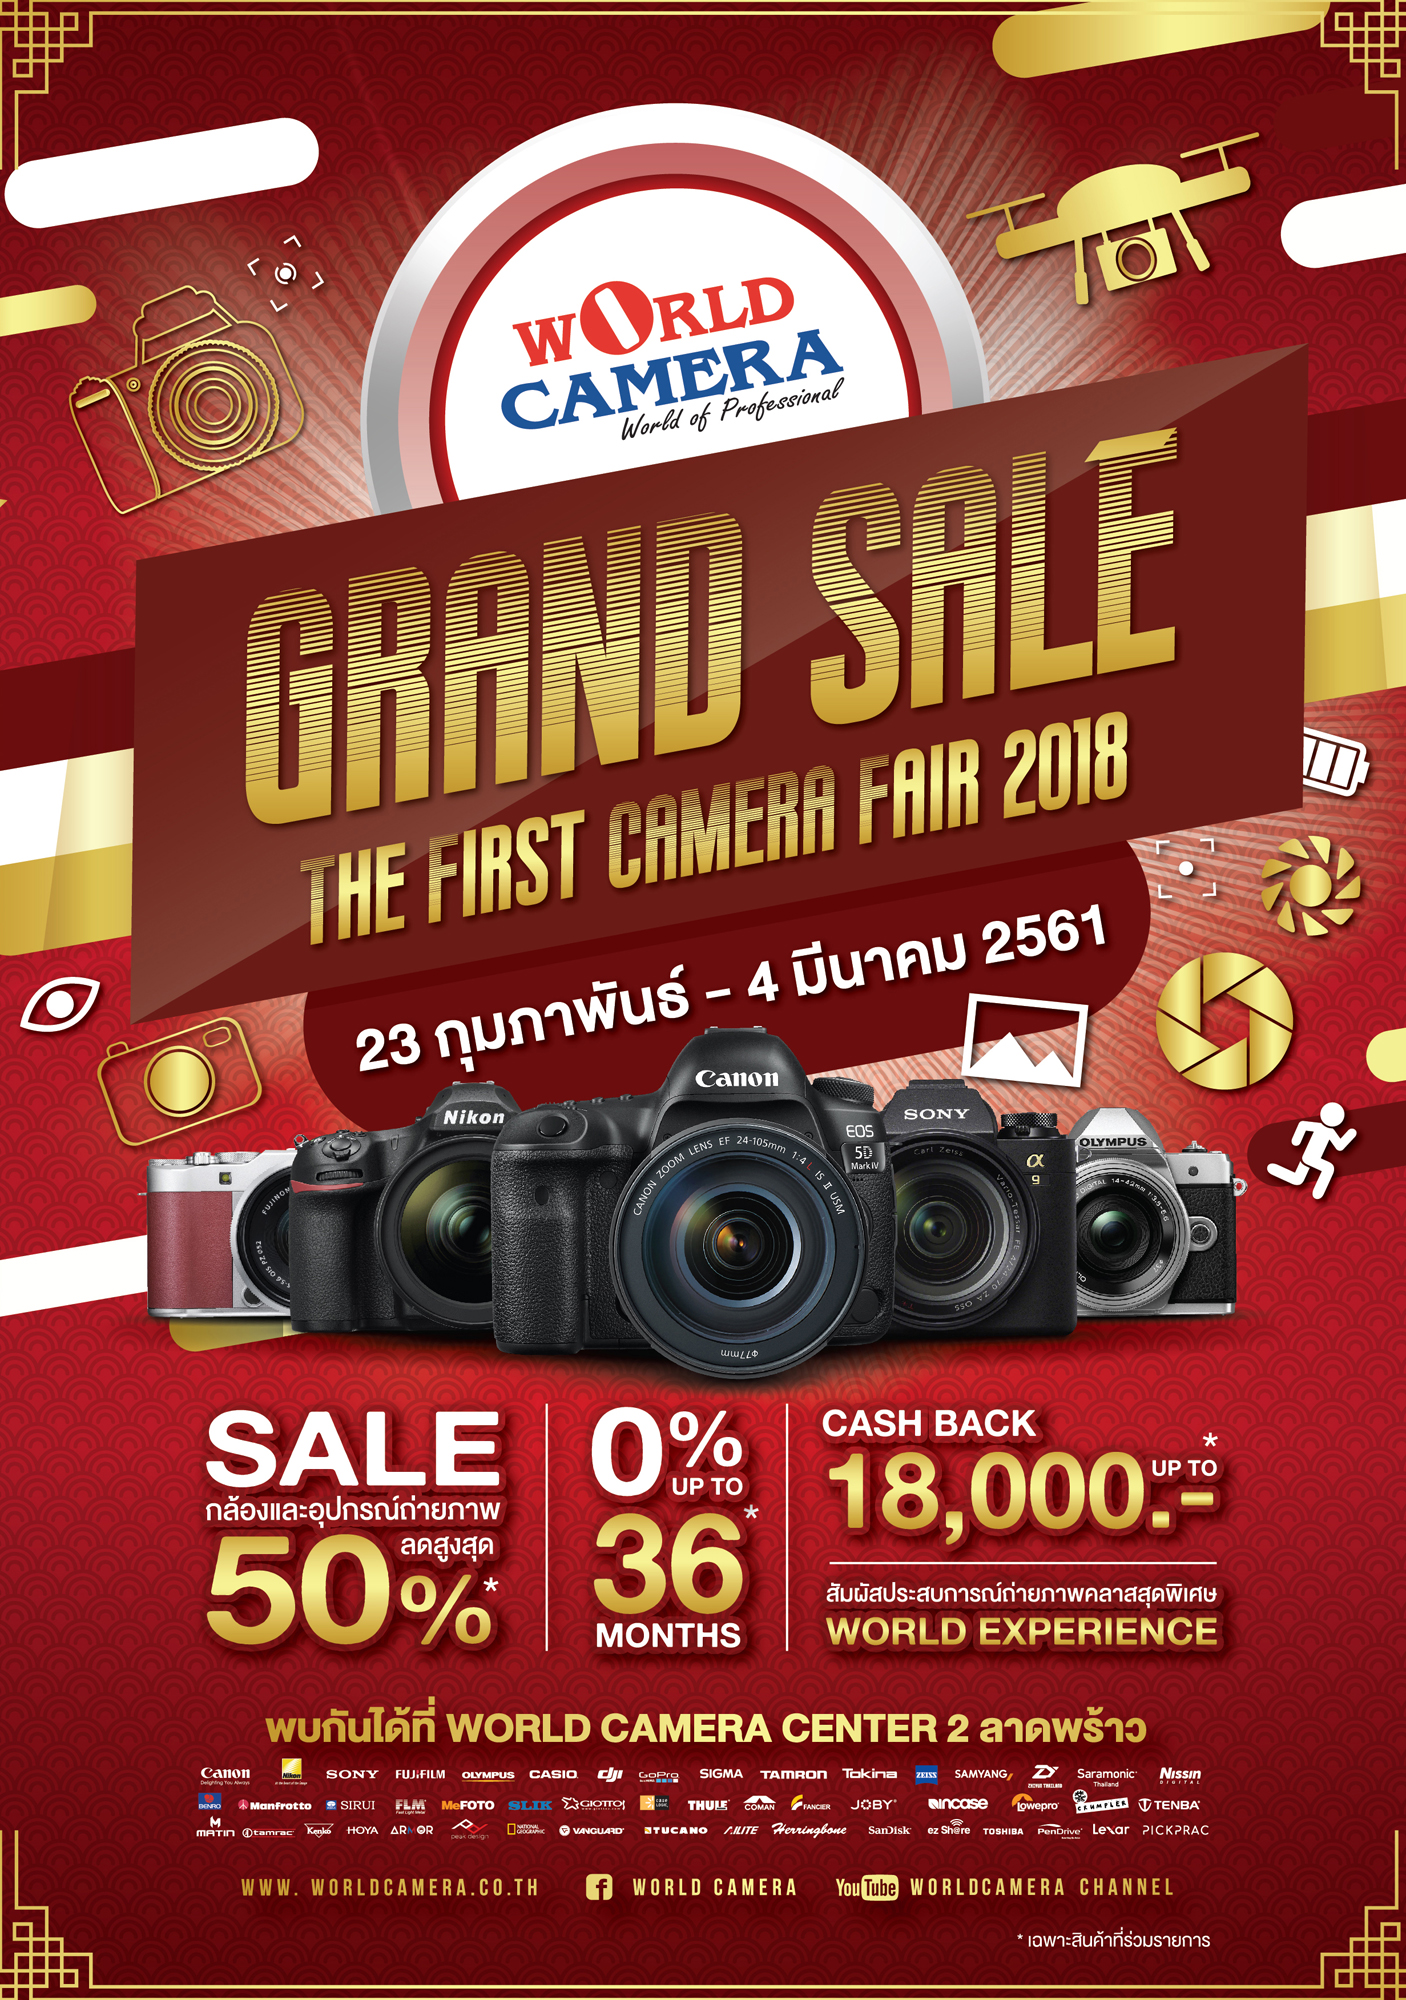 World Camera Grand Sale 2018